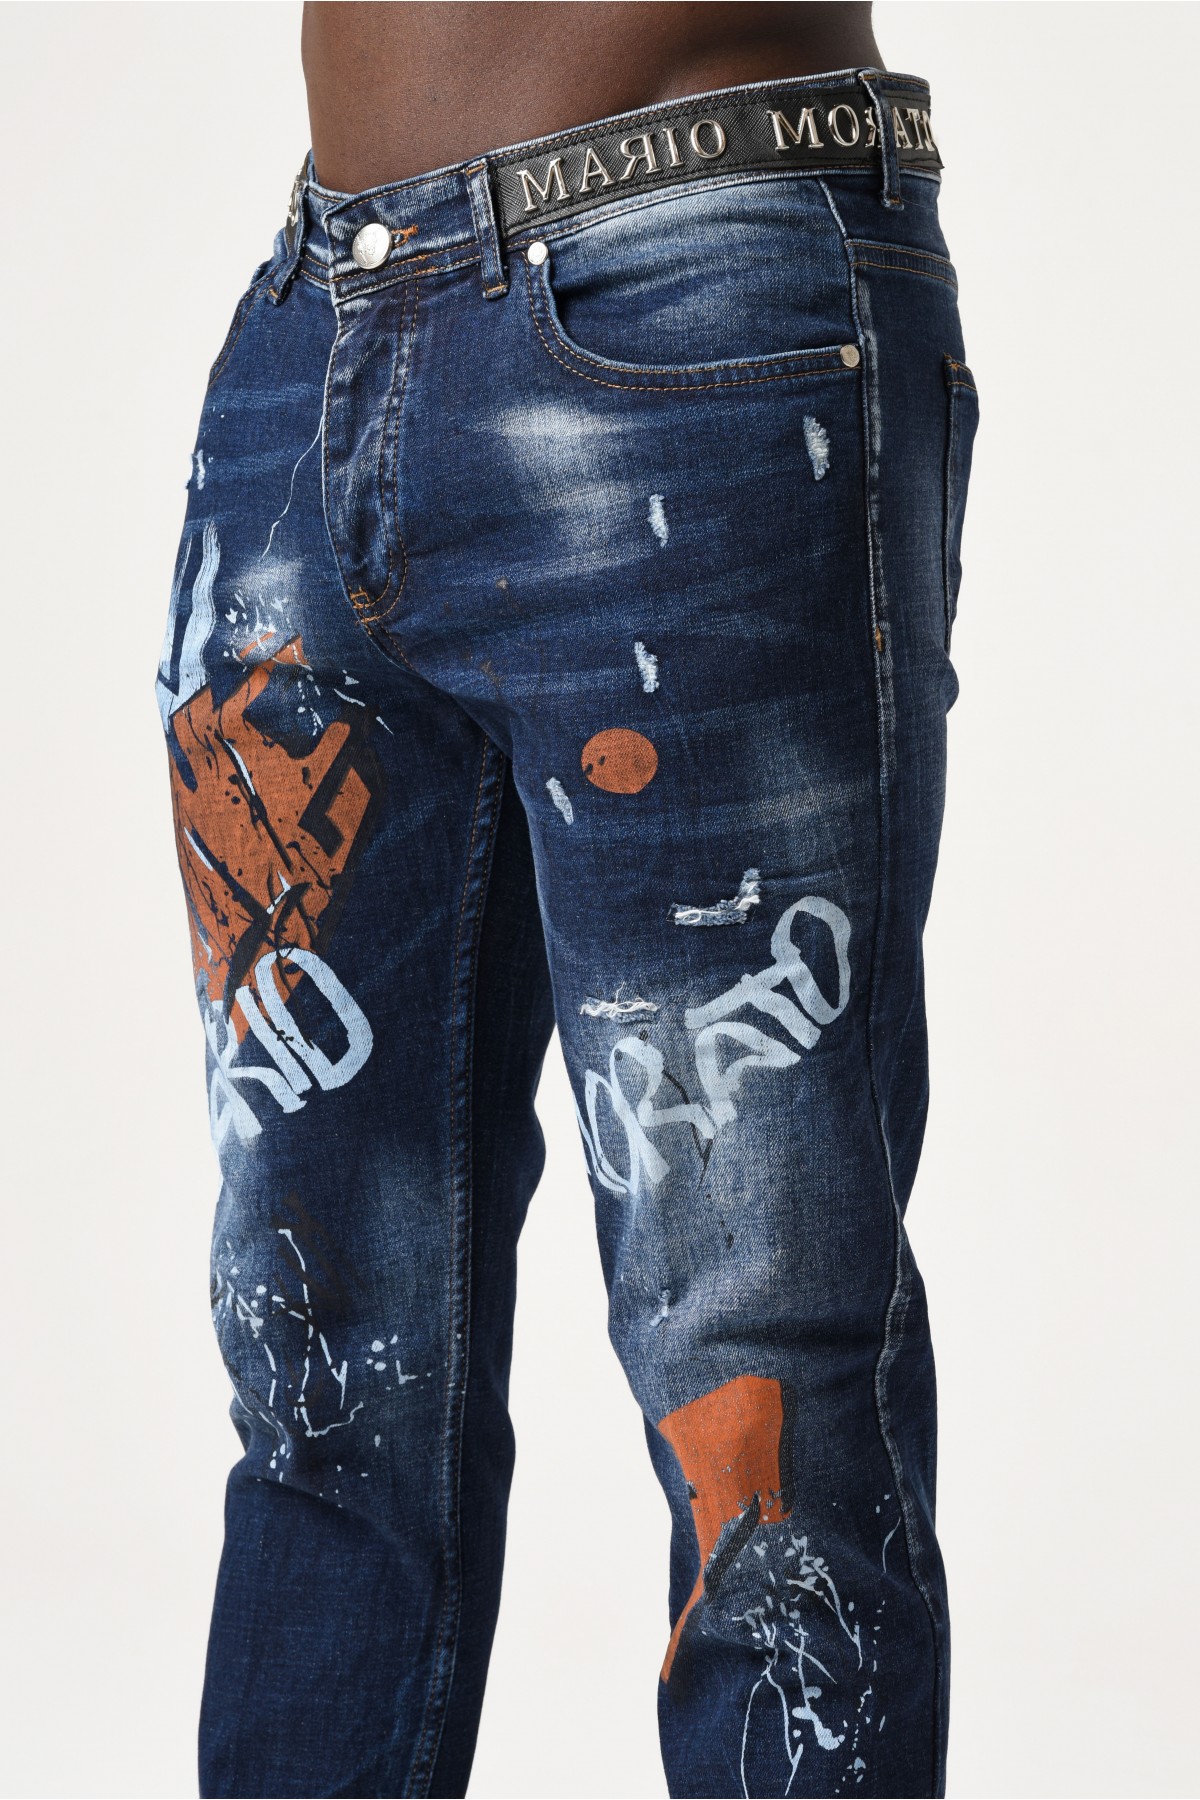 Erkek Denim Pantolon - Yazı Baskılı Düz Pantolon - Koyu Mavi